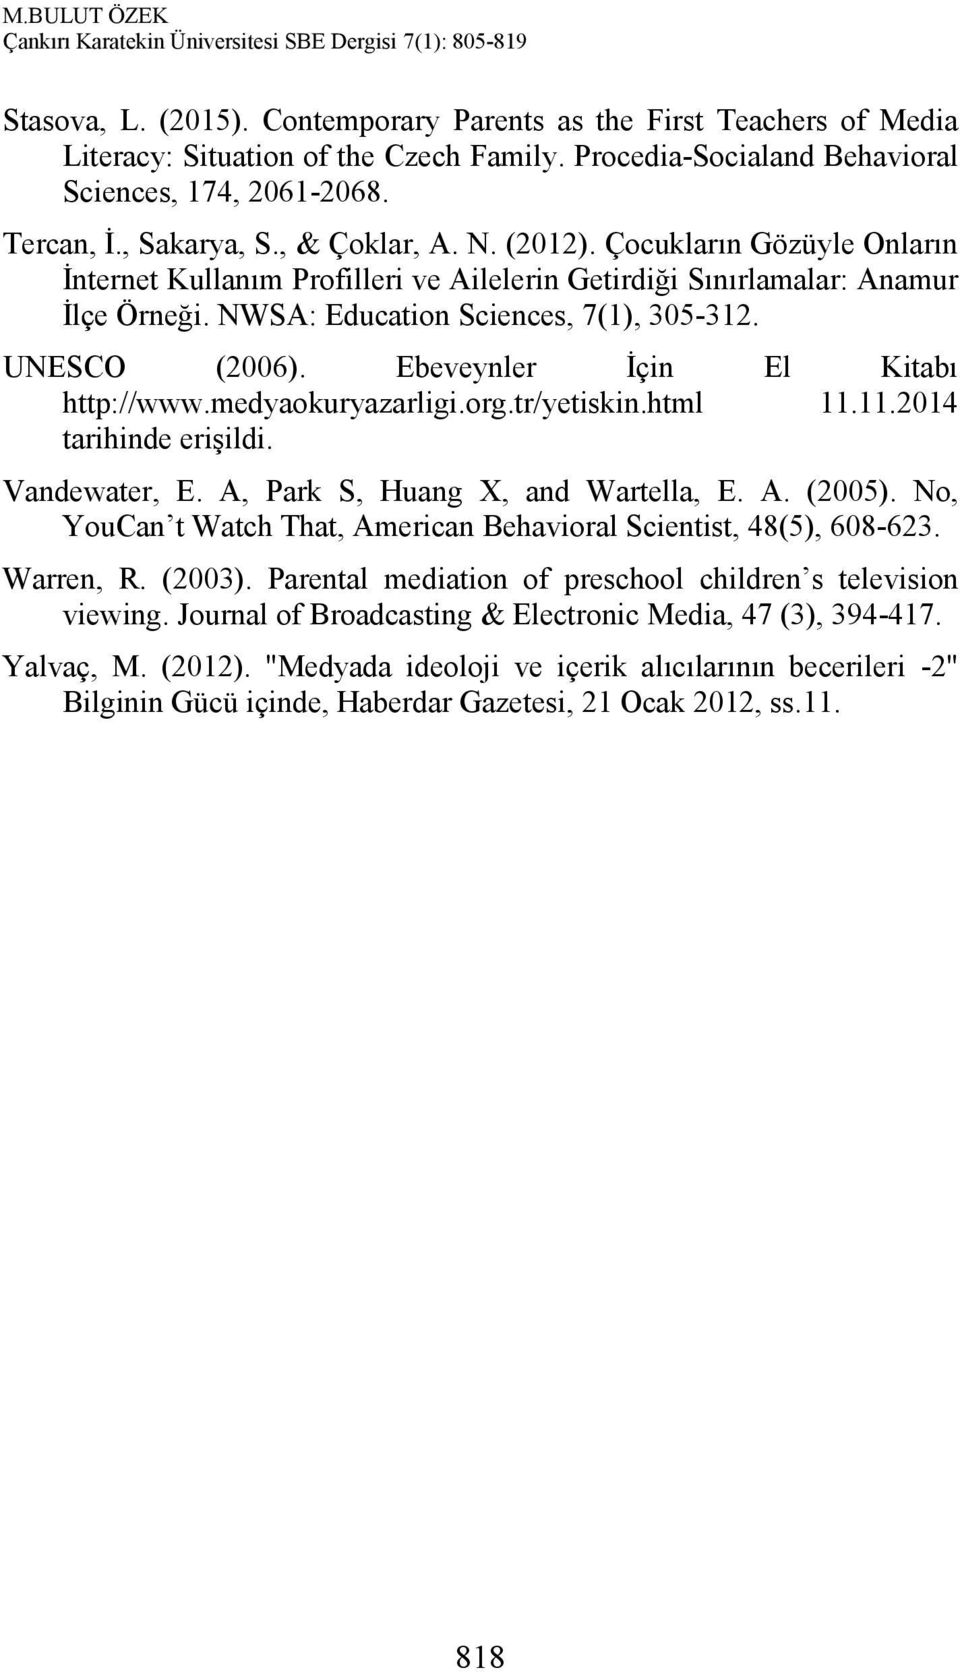 Ebeveynler İçin El Kitabı http://www.medyaokuryazarligi.org.tr/yetiskin.html 11.11.2014 tarihinde erişildi. Vandewater, E. A, Park S, Huang X, and Wartella, E. A. (2005).